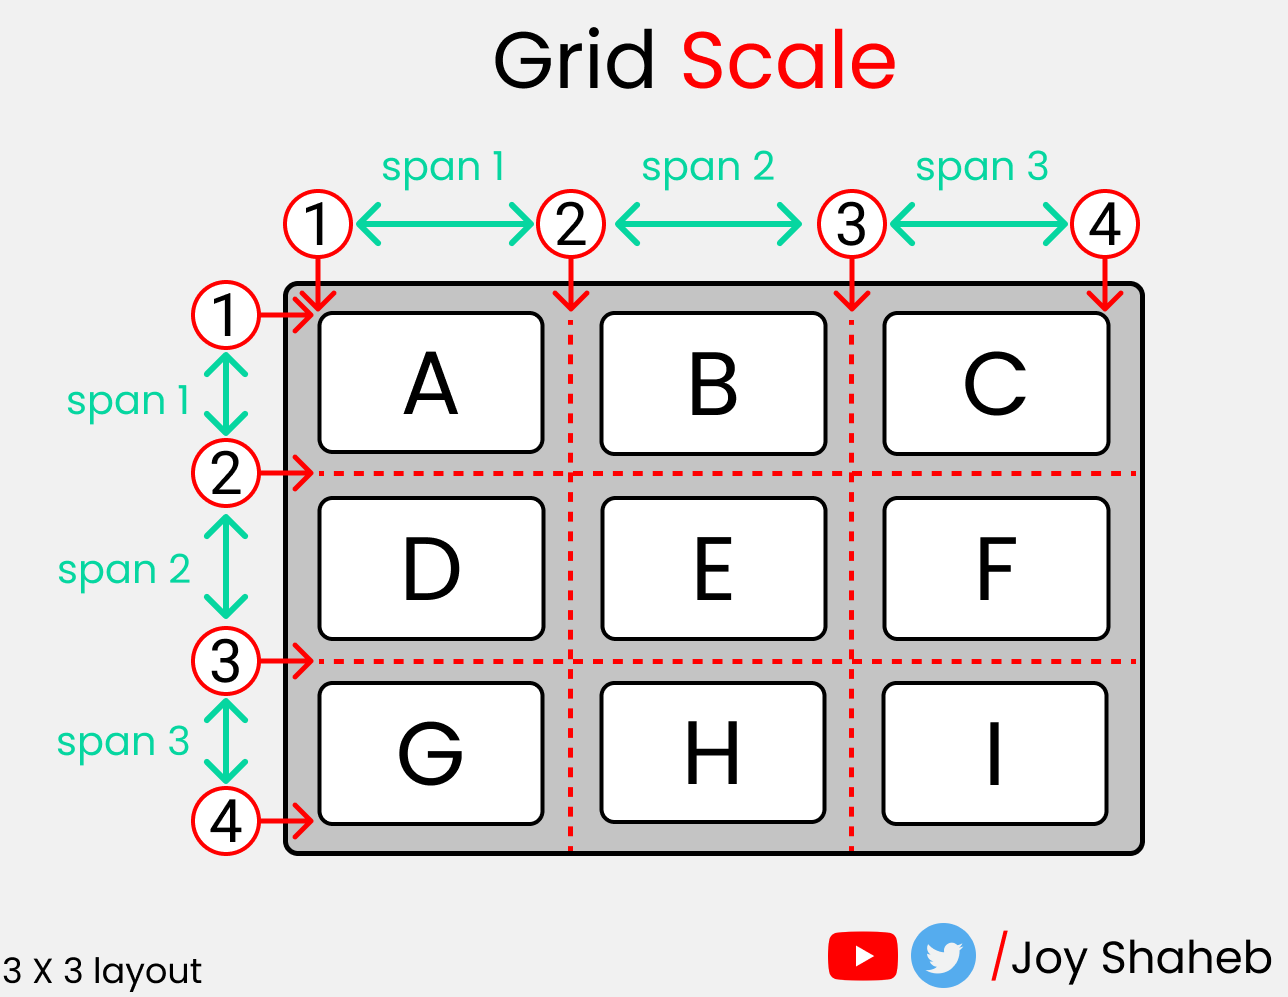 Полный самоучитель по CSS Grid со шпаргалкой27